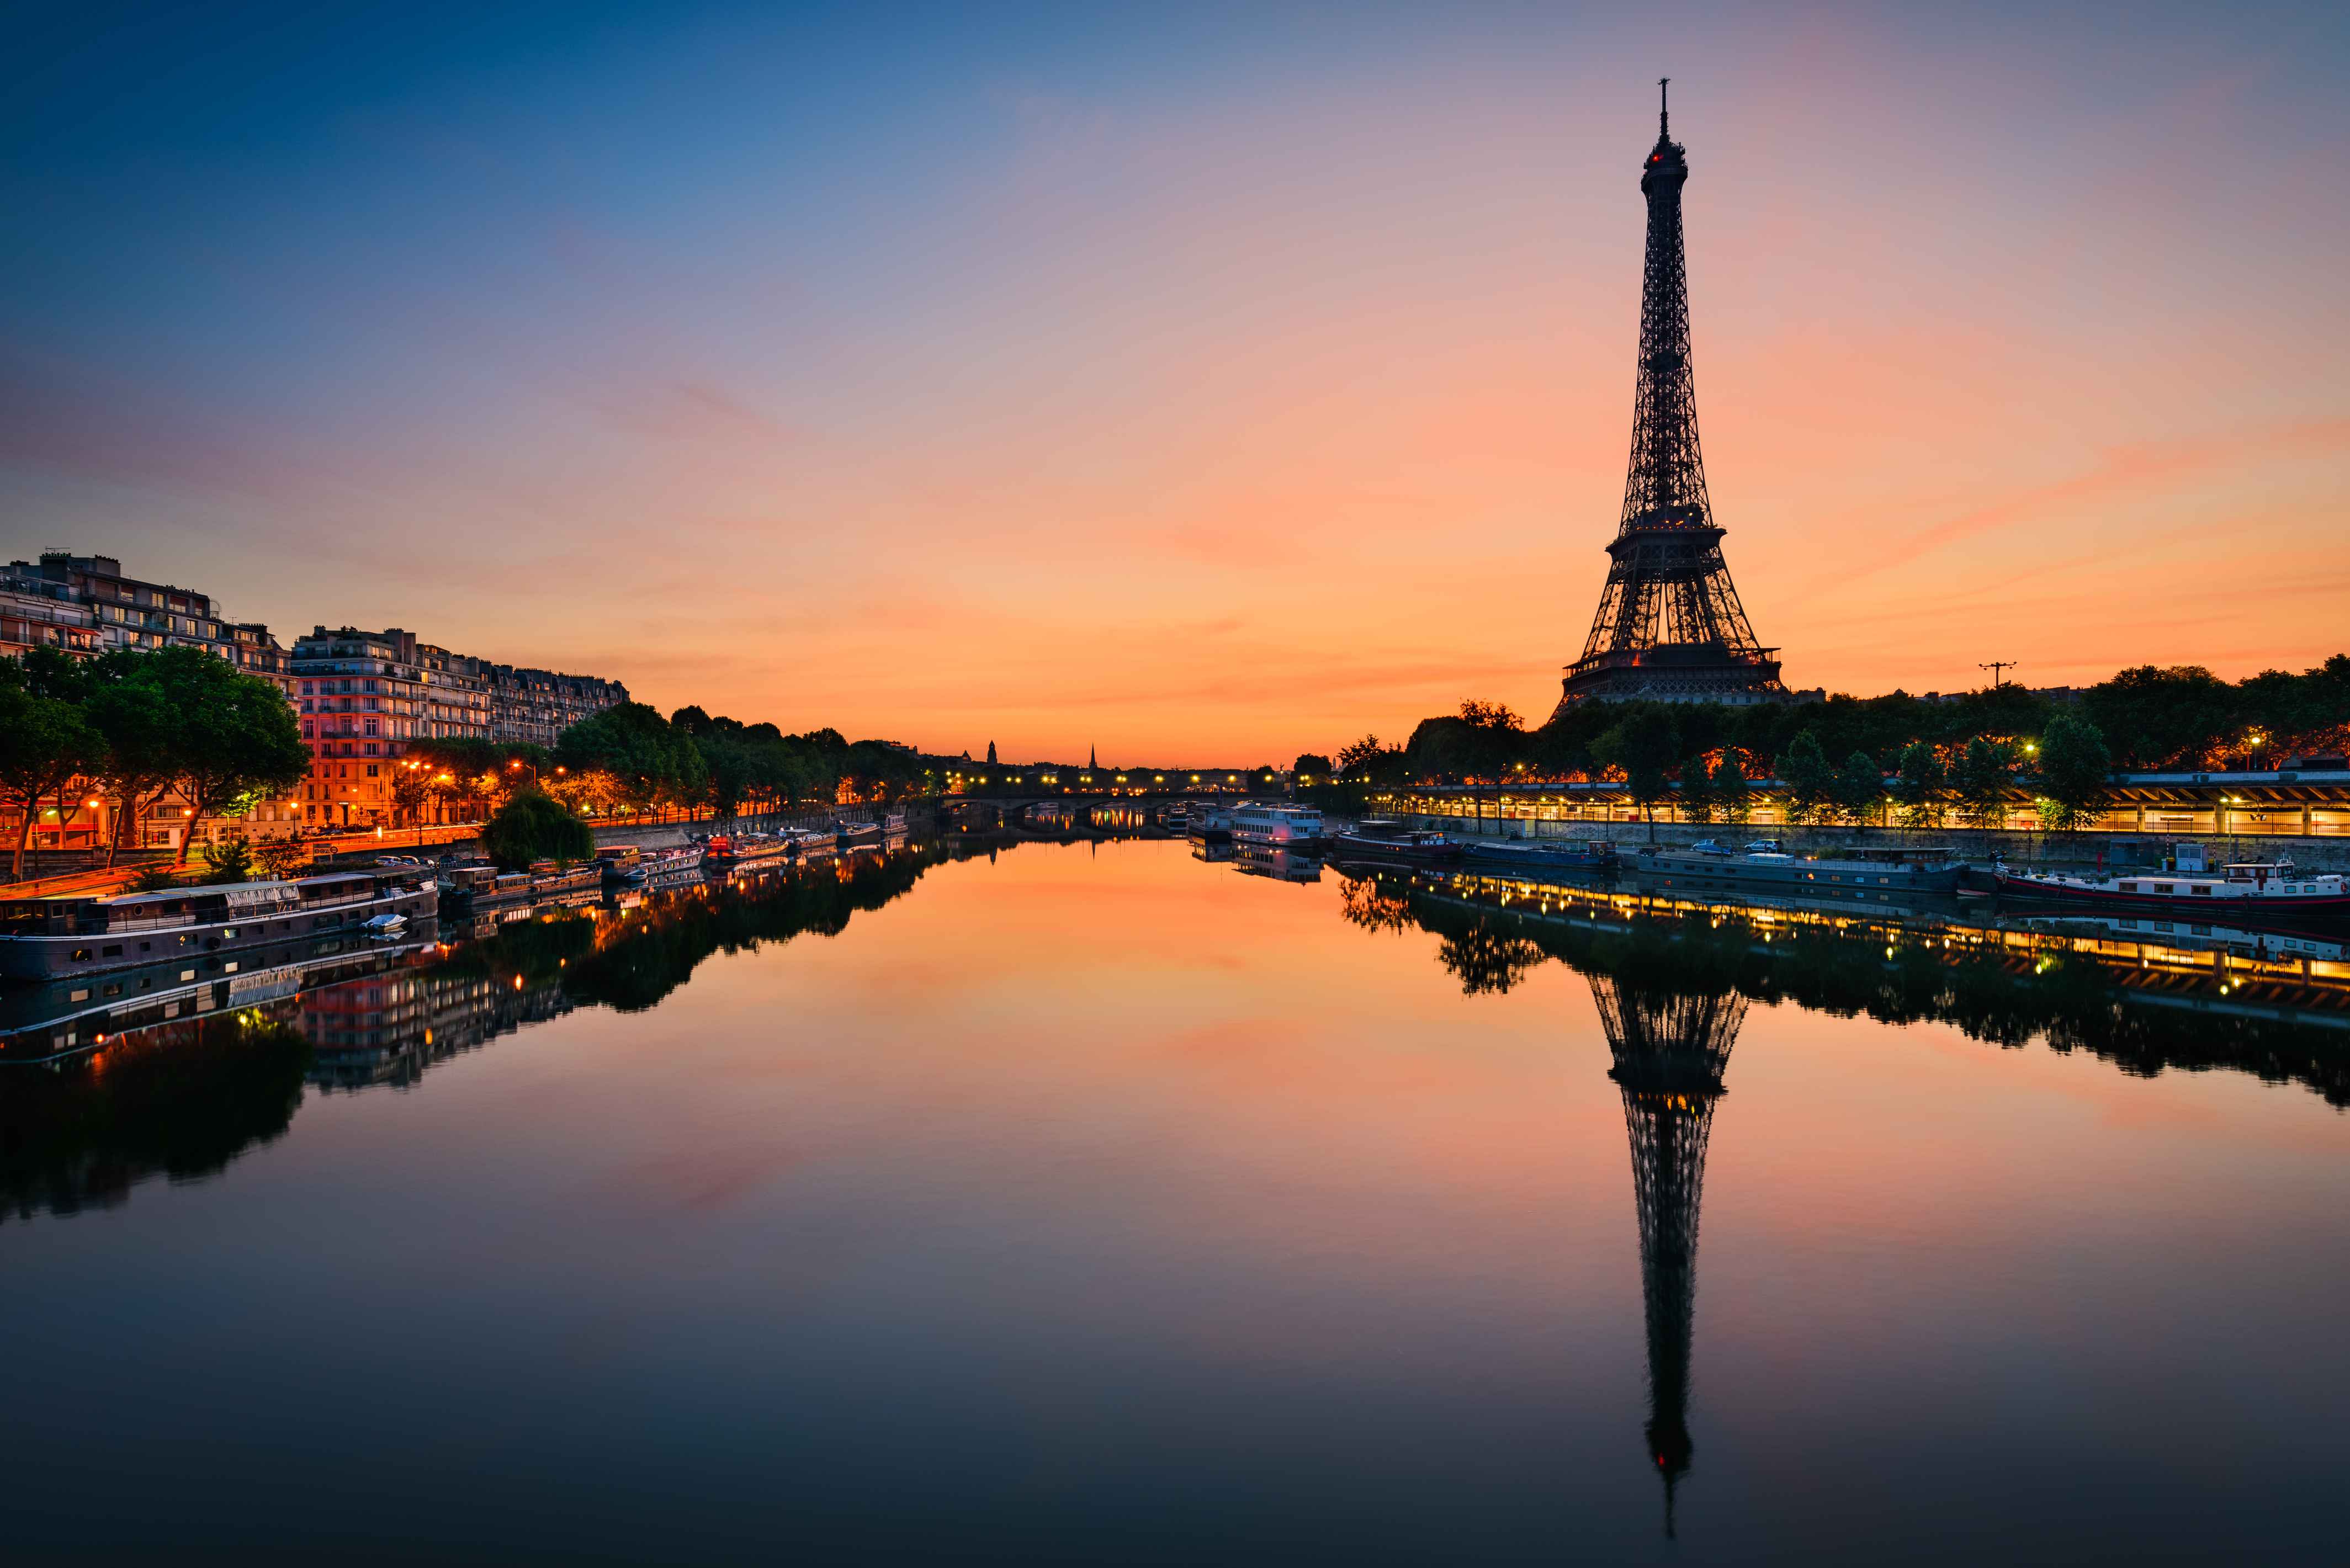 Fun fact: Paris The City Of Light